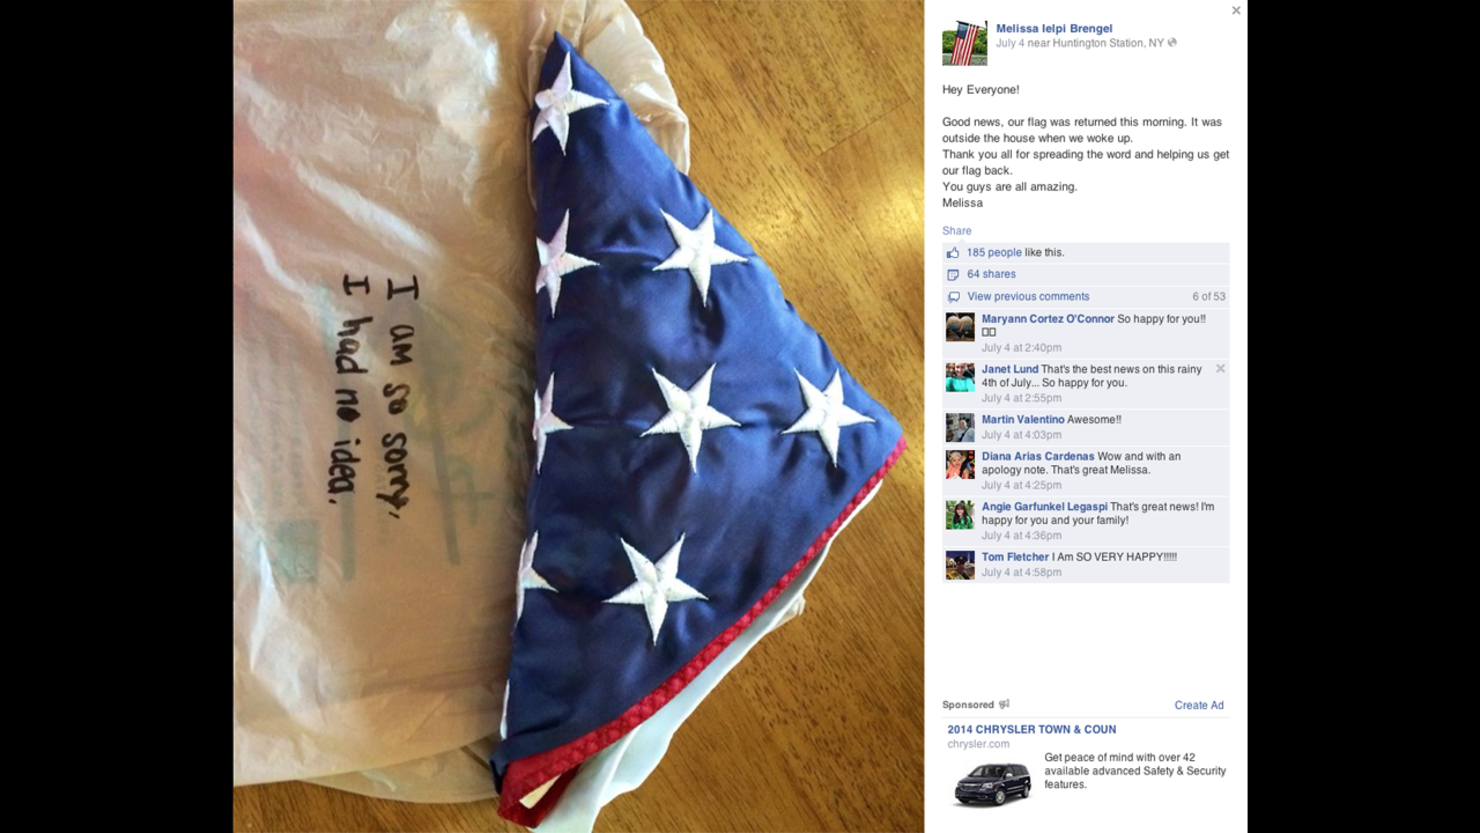 stolen 9/11 flag returned